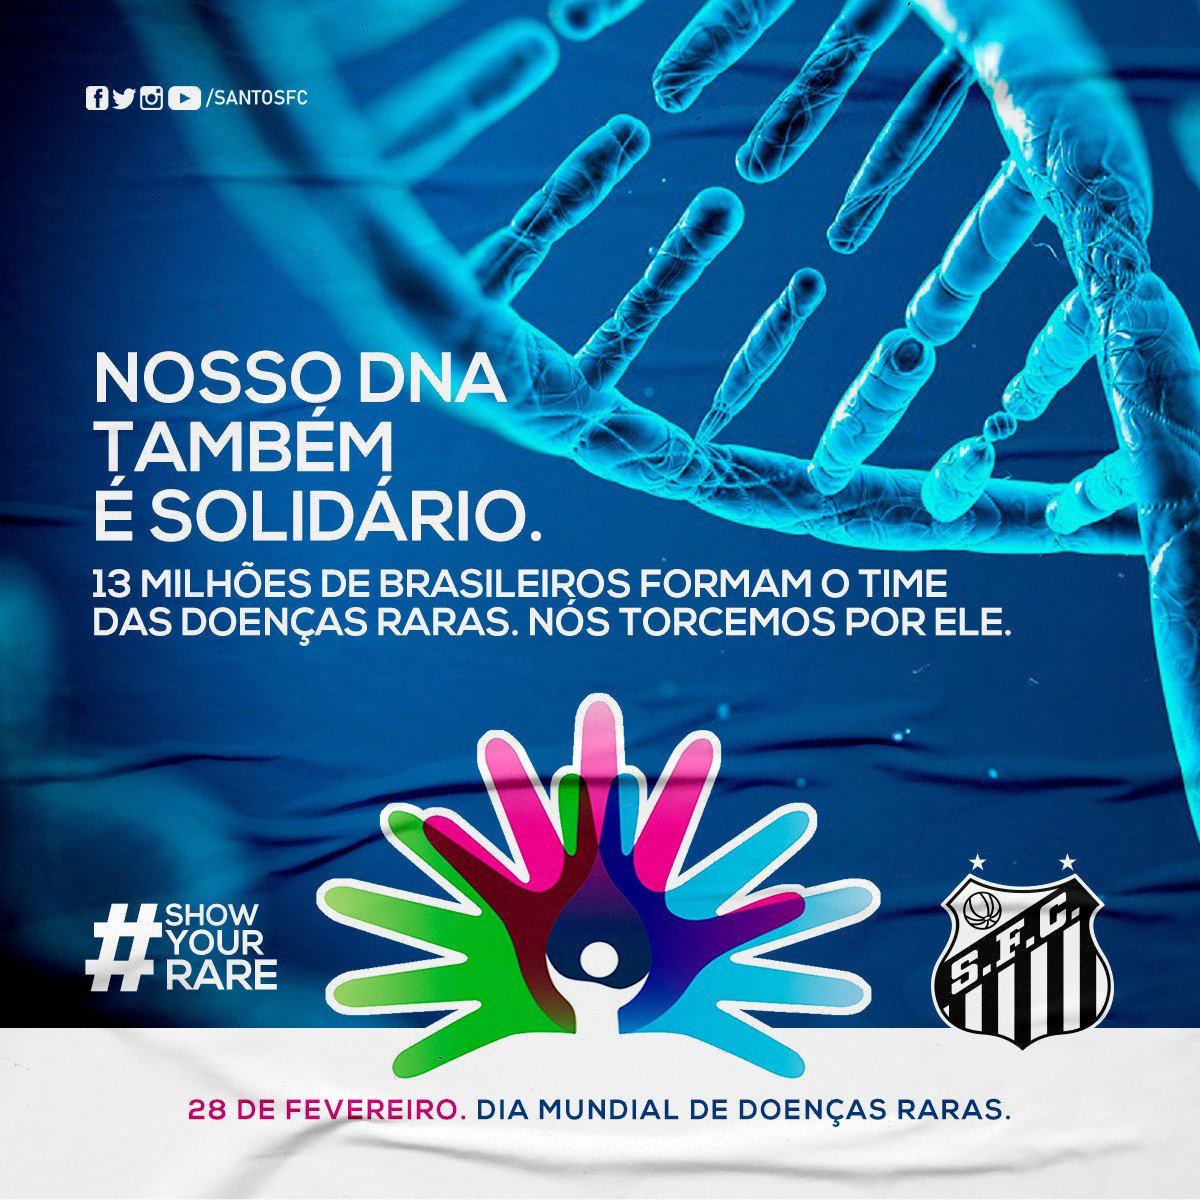 Cerca de 13 milhões de brasileiros convivem com uma doença rara, 75% deles podem ser crianças. As doenças podem ser raras, mas o cuidado não! #ShowYourRare @rarediseaseday